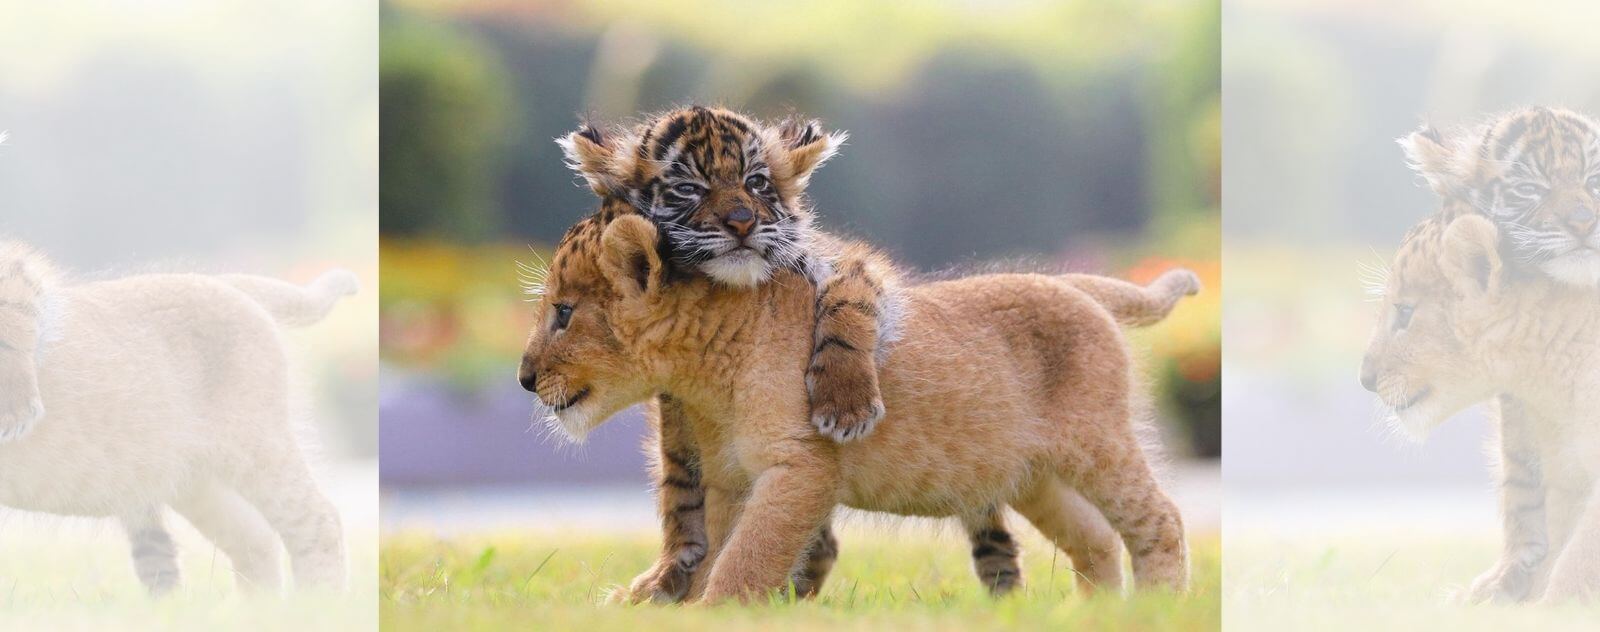 Tigre sobre un cachorro de león (león y tigre)